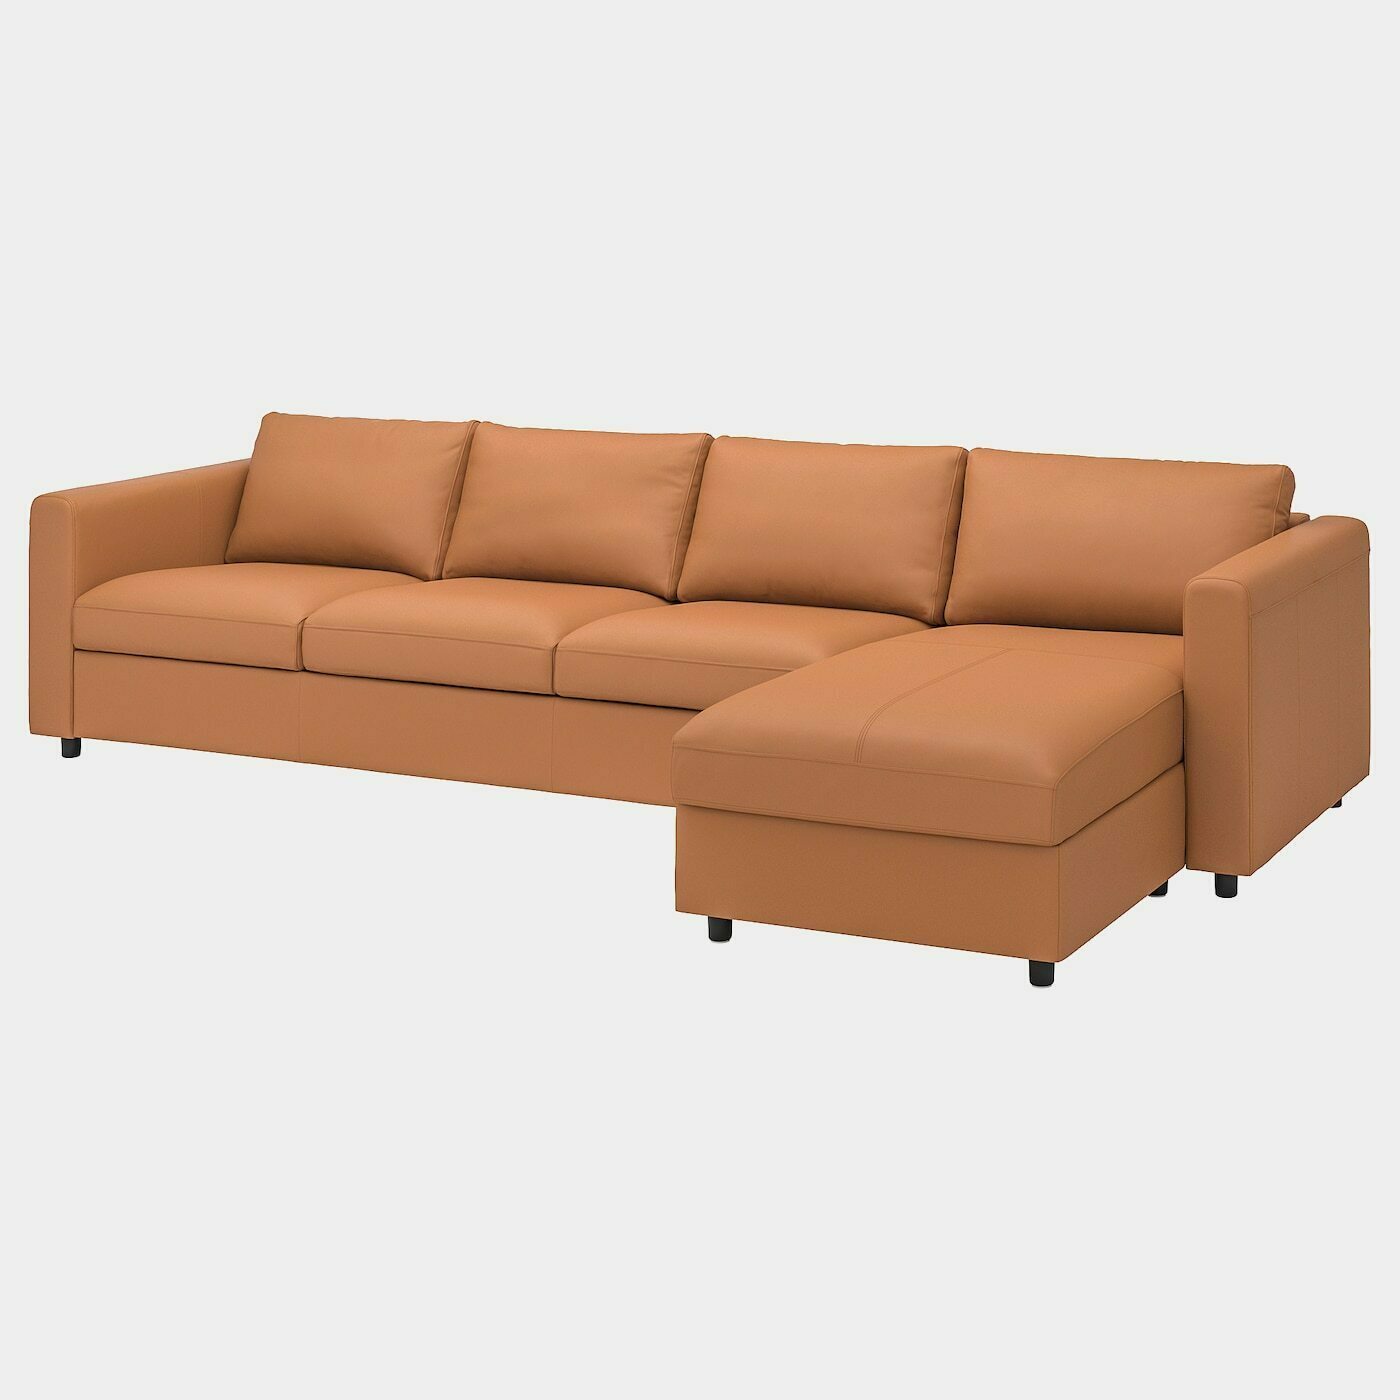 VIMLE 4er-Sofa  -  - Möbel Ideen für dein Zuhause von Home Trends. Möbel Trends von Social Media Influencer für dein Skandi Zuhause.